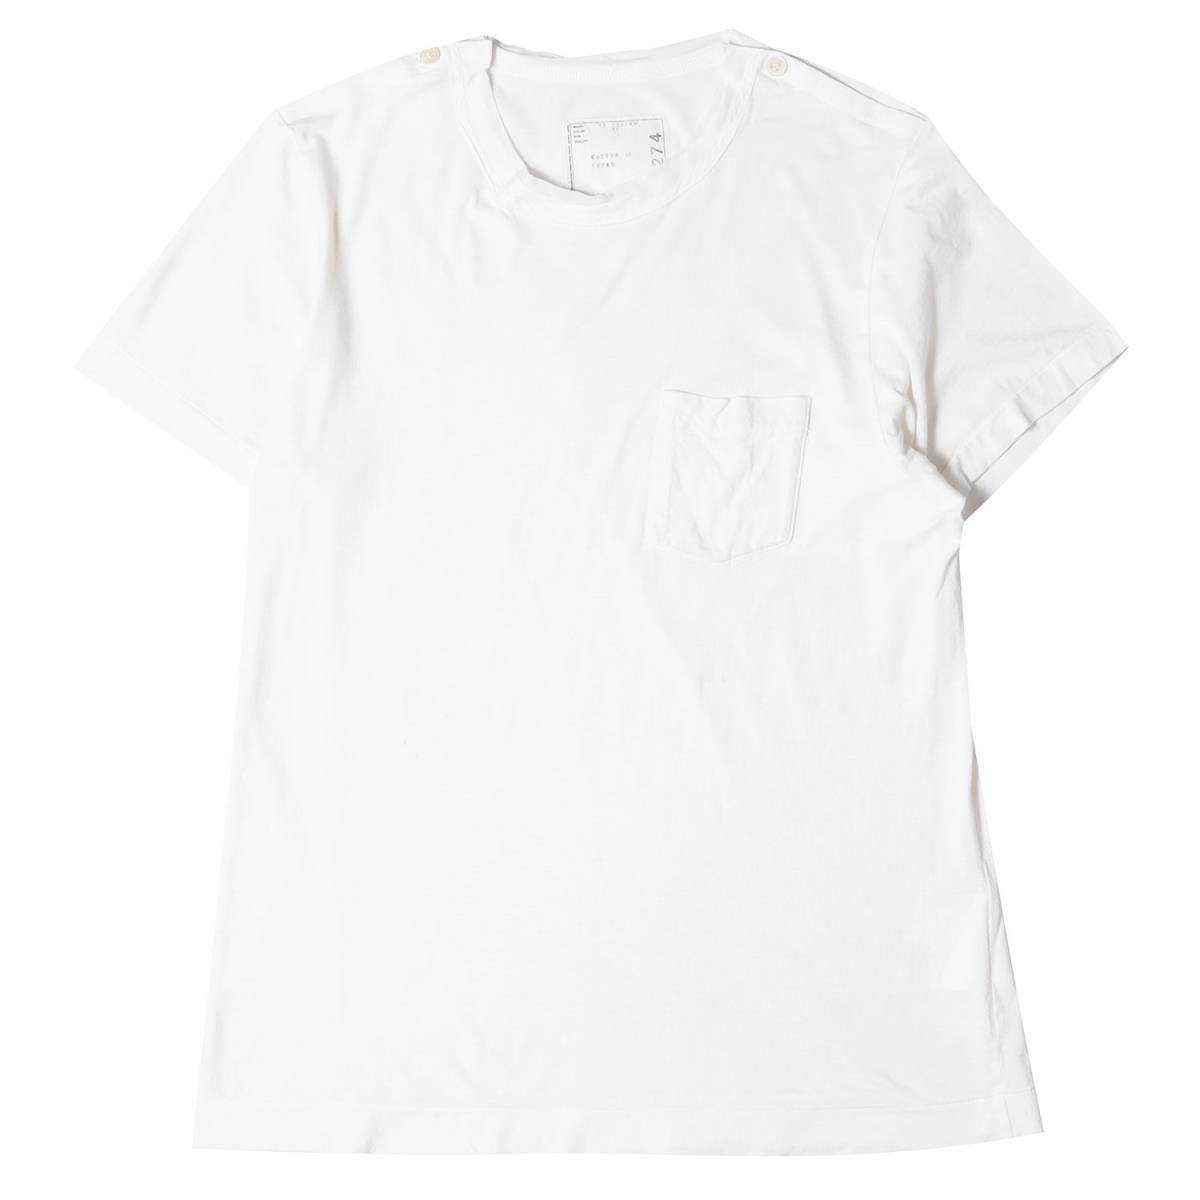 Sacai サカイ Tシャツ サイズ:1 ポケット付き ショルダーボタン クルー